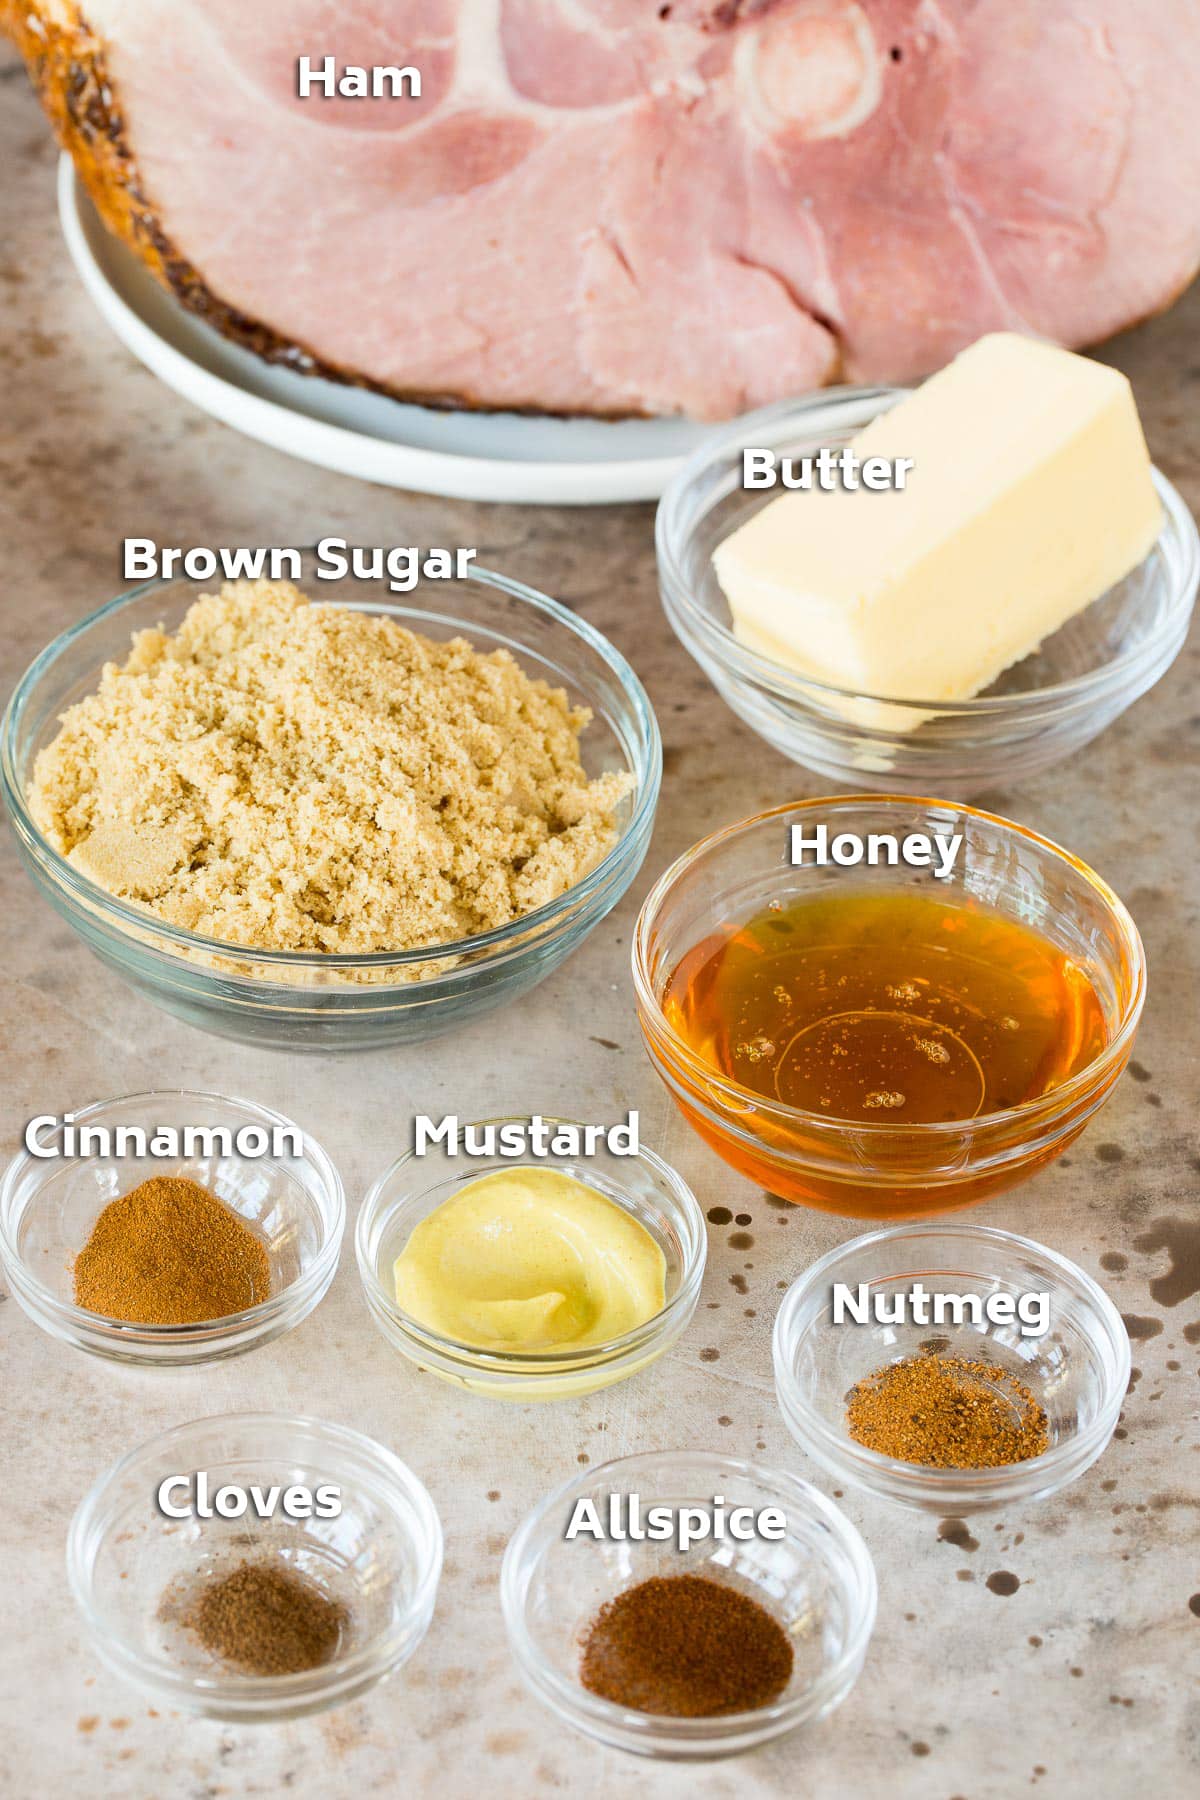 Ingredients including ham, brown sugar, honey, butter and seasonings.